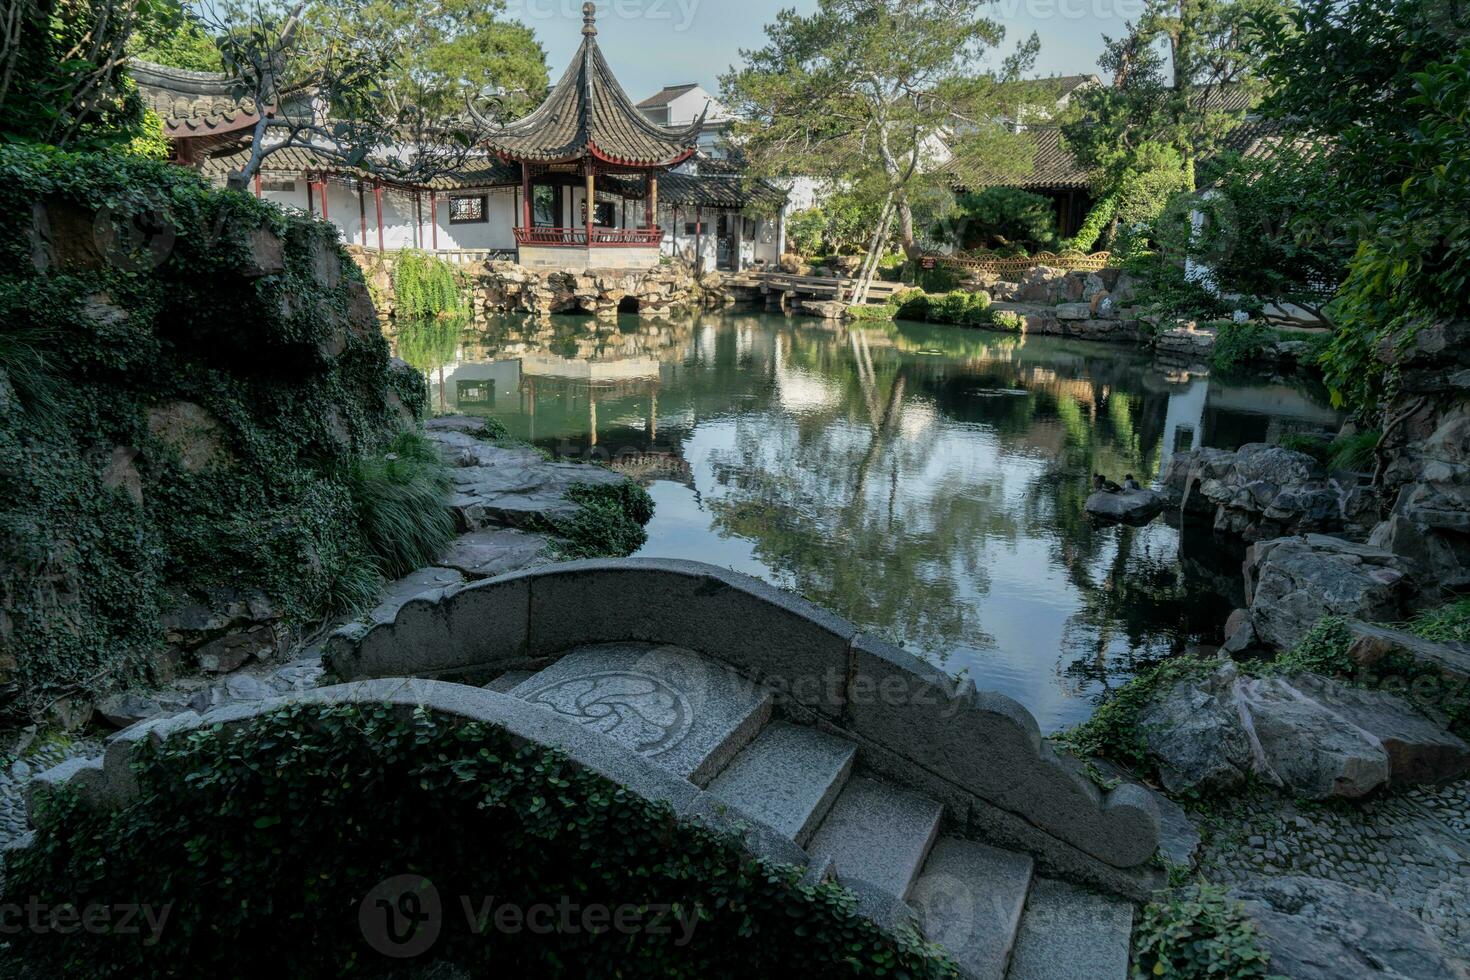 antiguo arquitectura en el Suzhou jardín en porcelana. foto